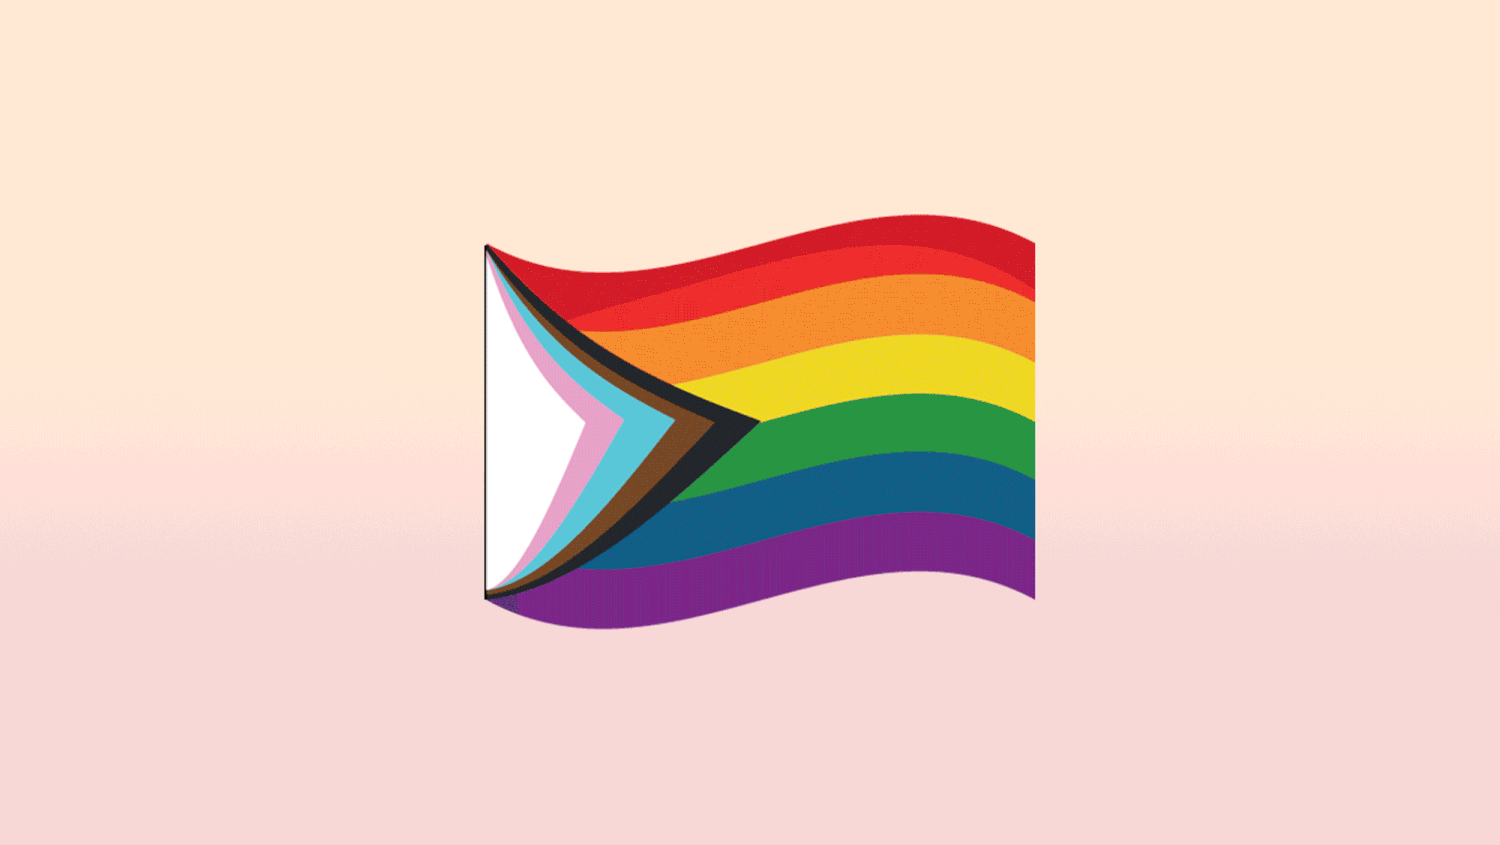 Estas 23 banderas representan distintas identidades LGBTQ+, y la última incluye identidades intersexuales